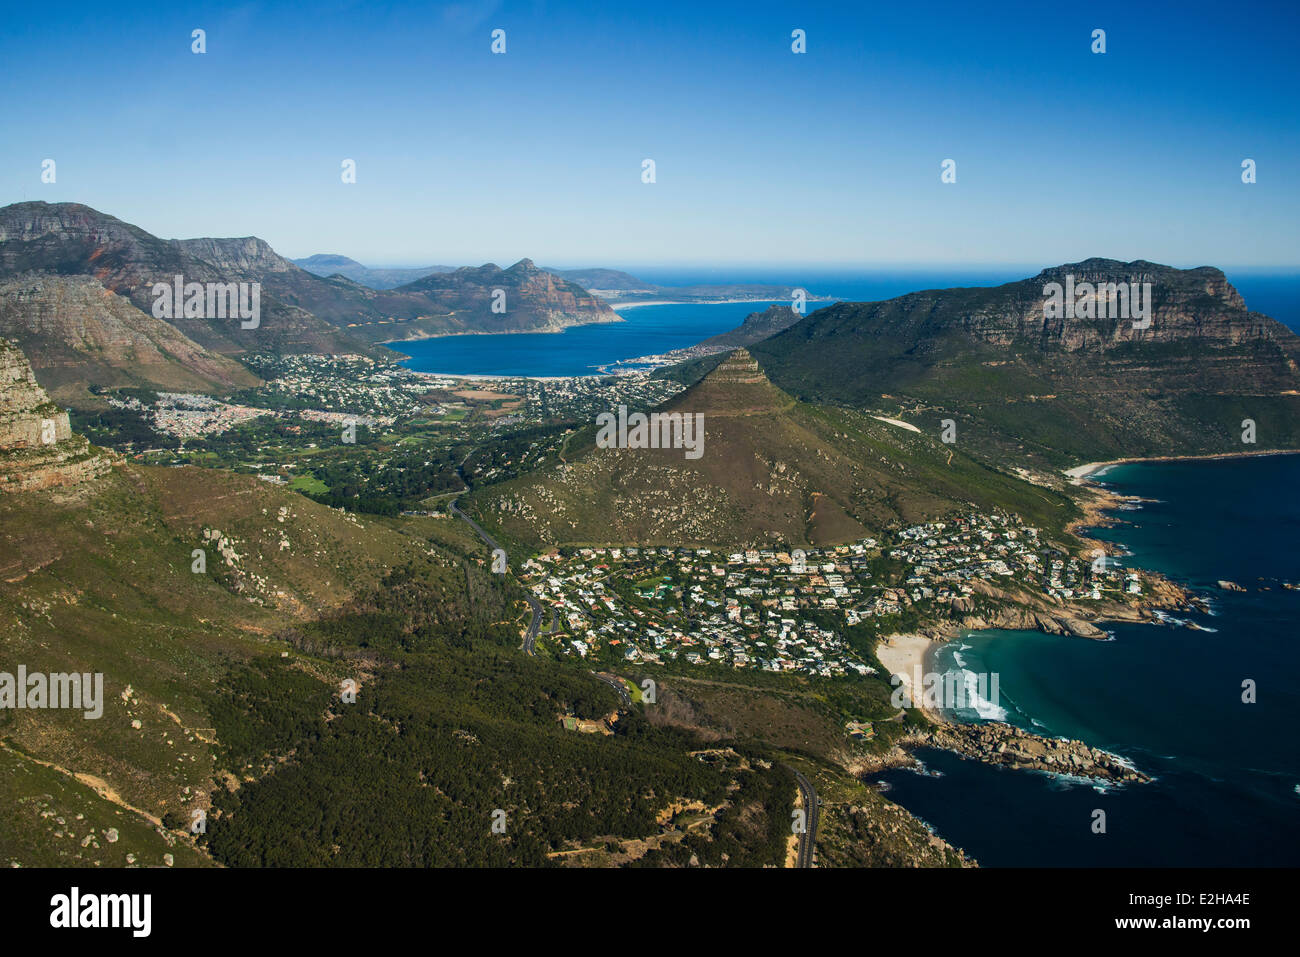 Luftaufnahme, Llandudno Beach und Hout Bay mit Mount Rhodes, Cape Town, Western Cape, Südafrika Stockfoto